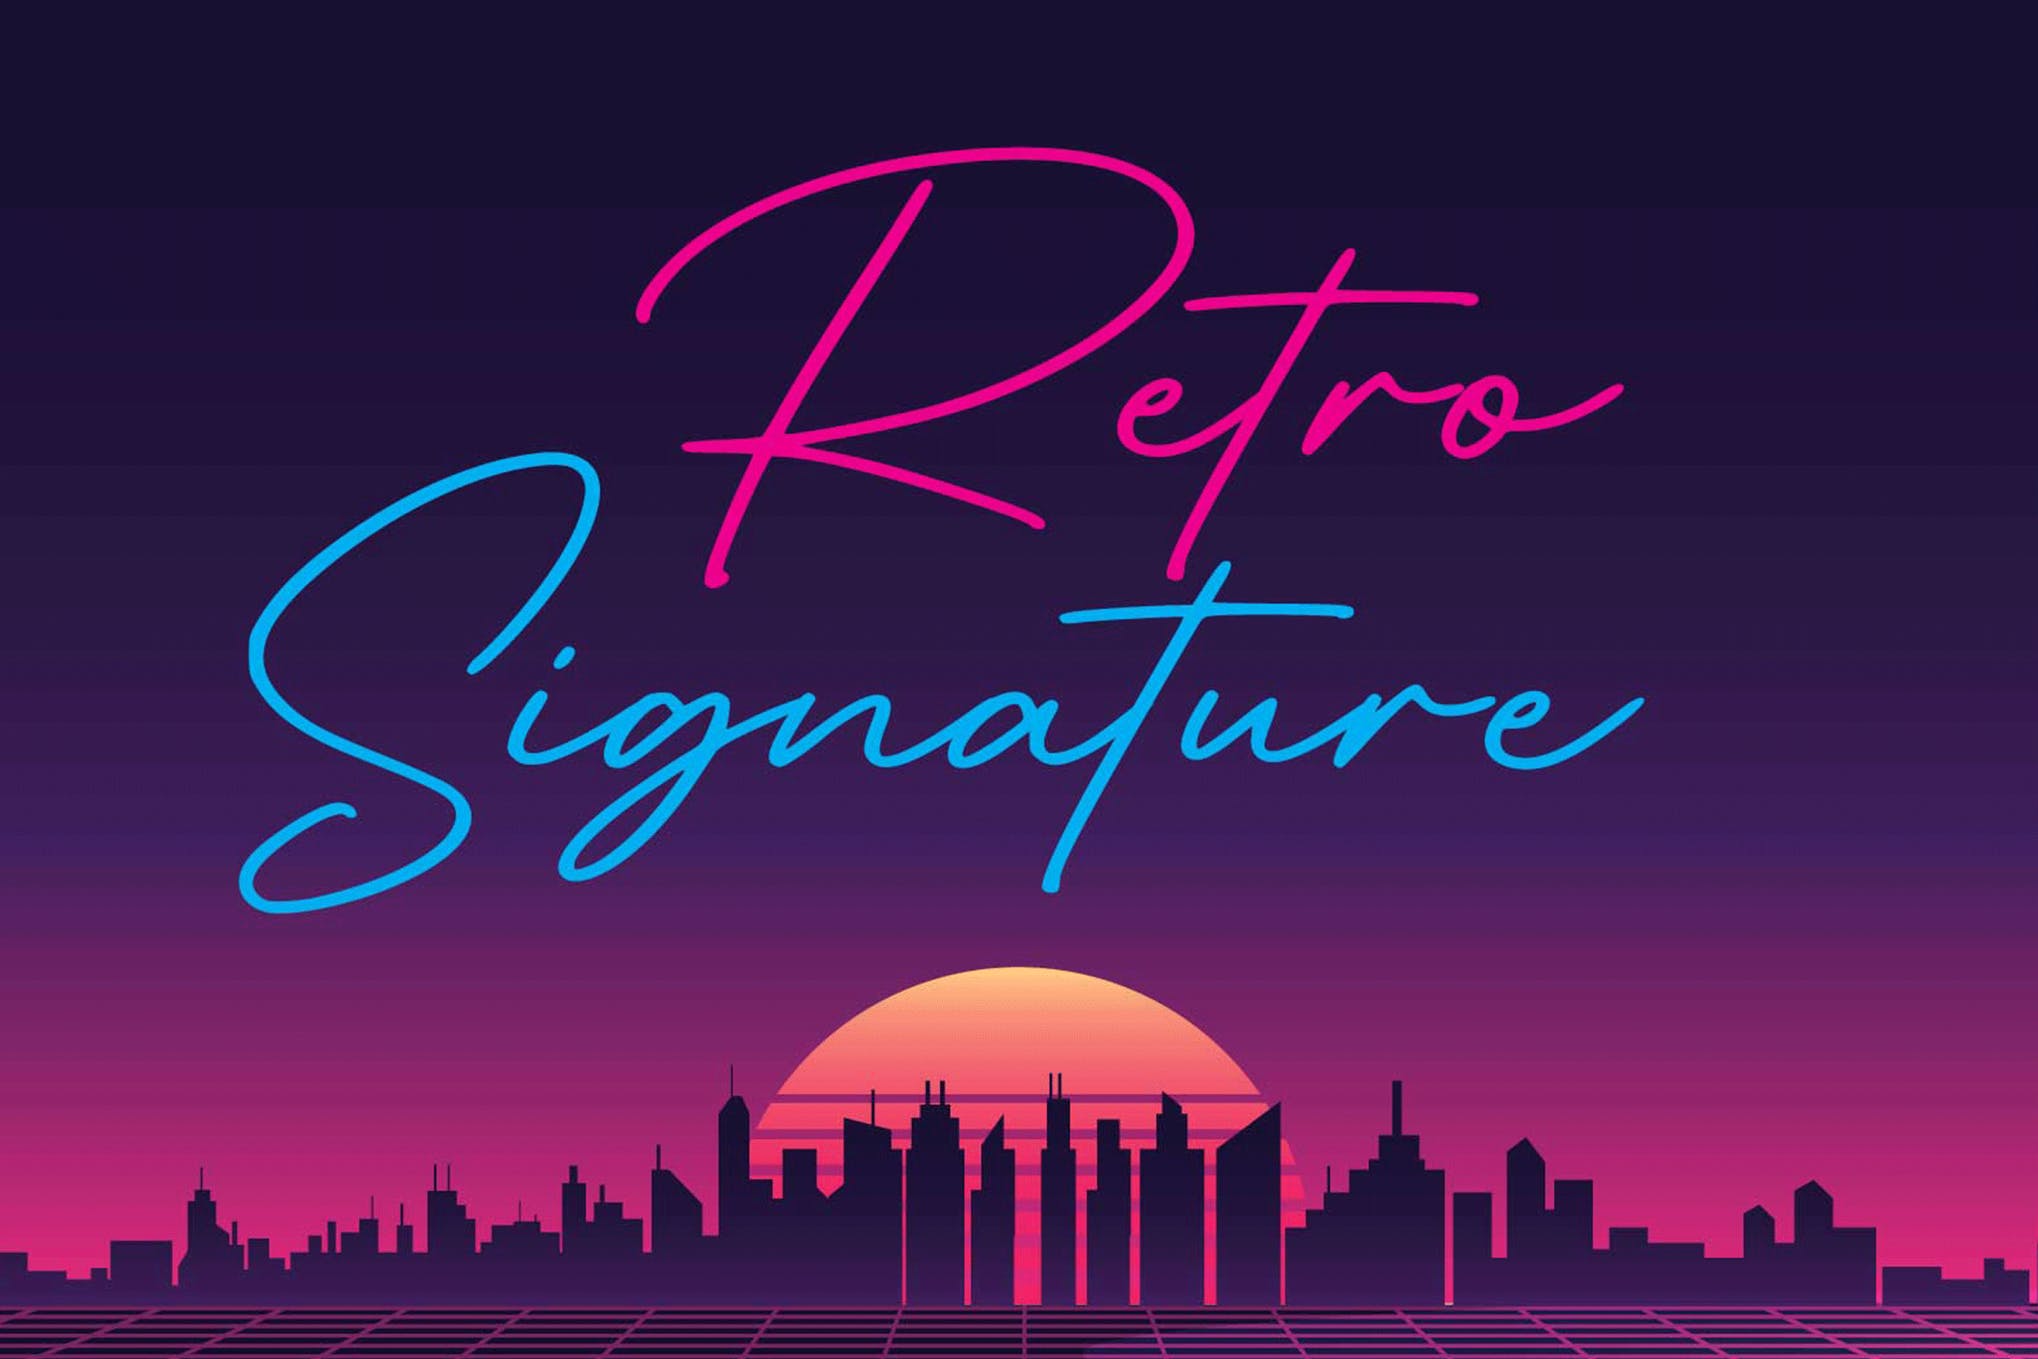 Retro Signature font